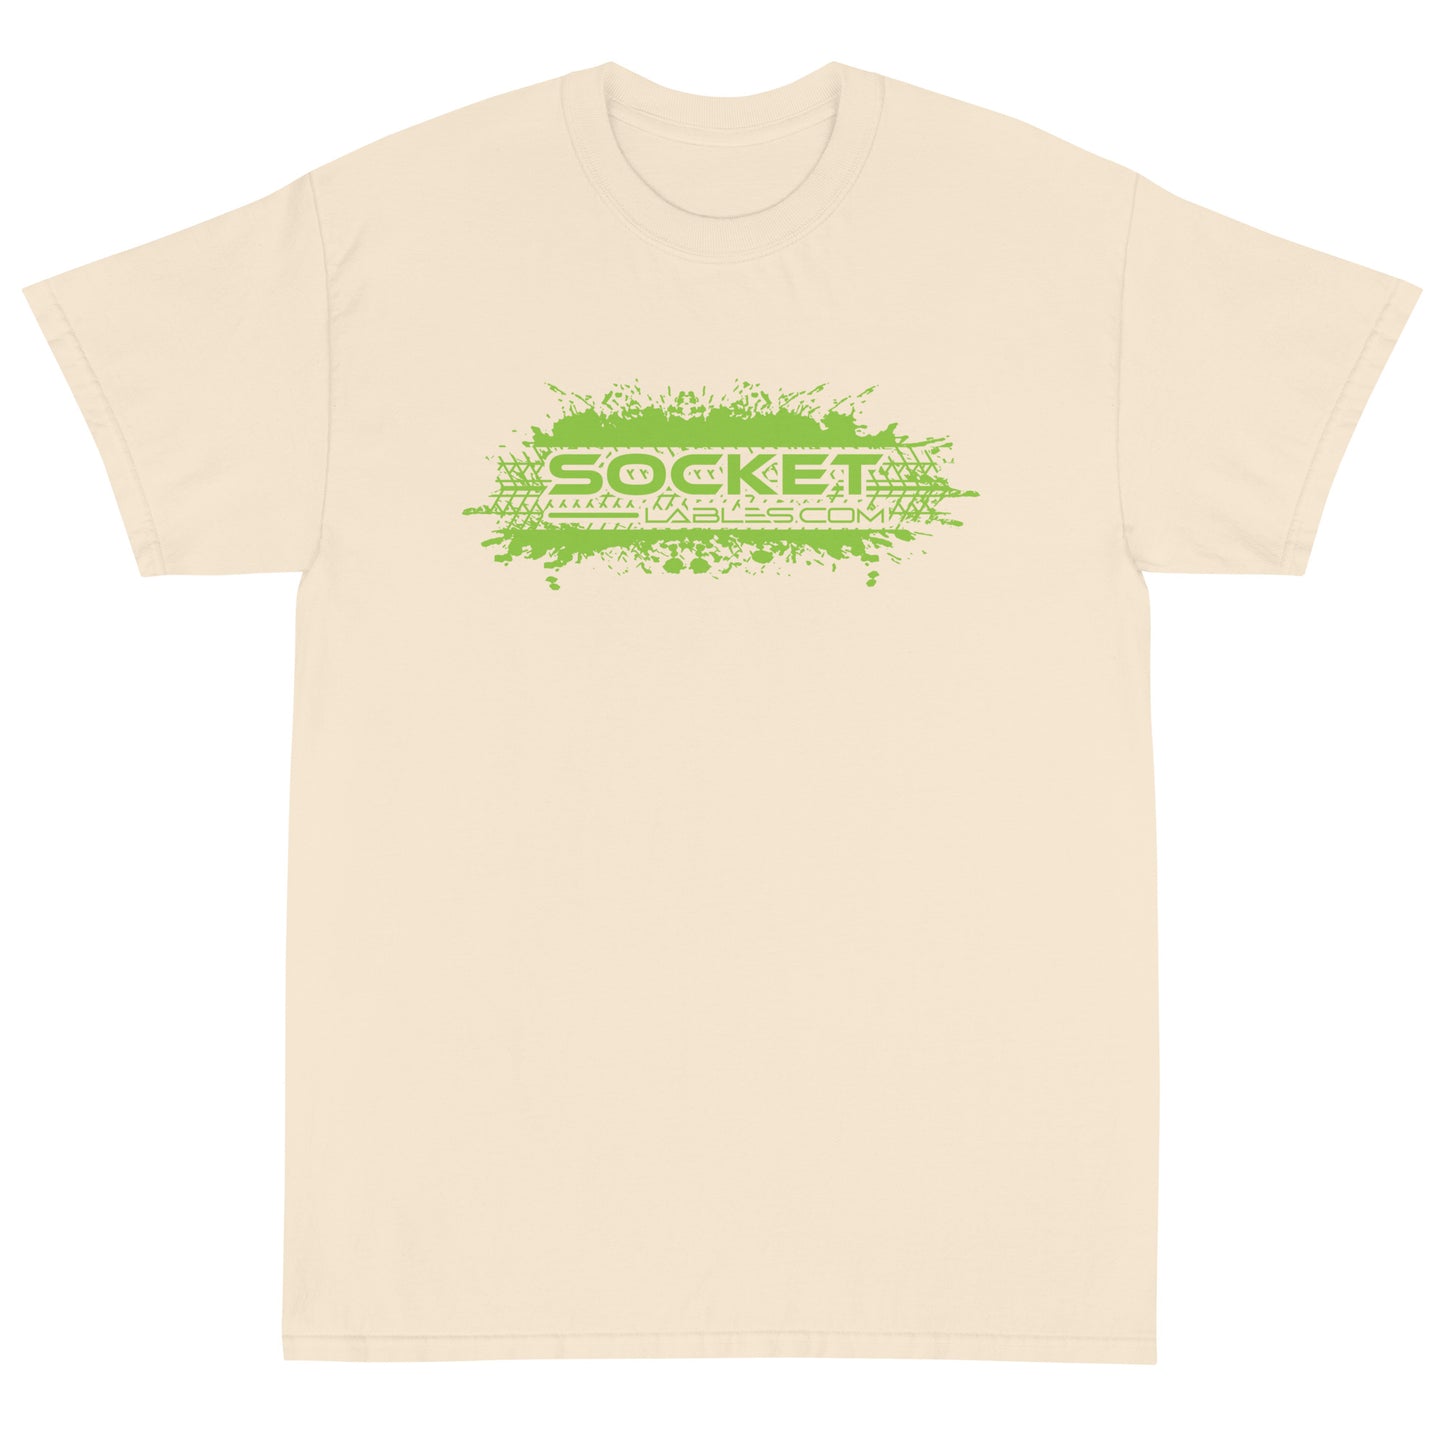 Socket Labels.com T-Shirt